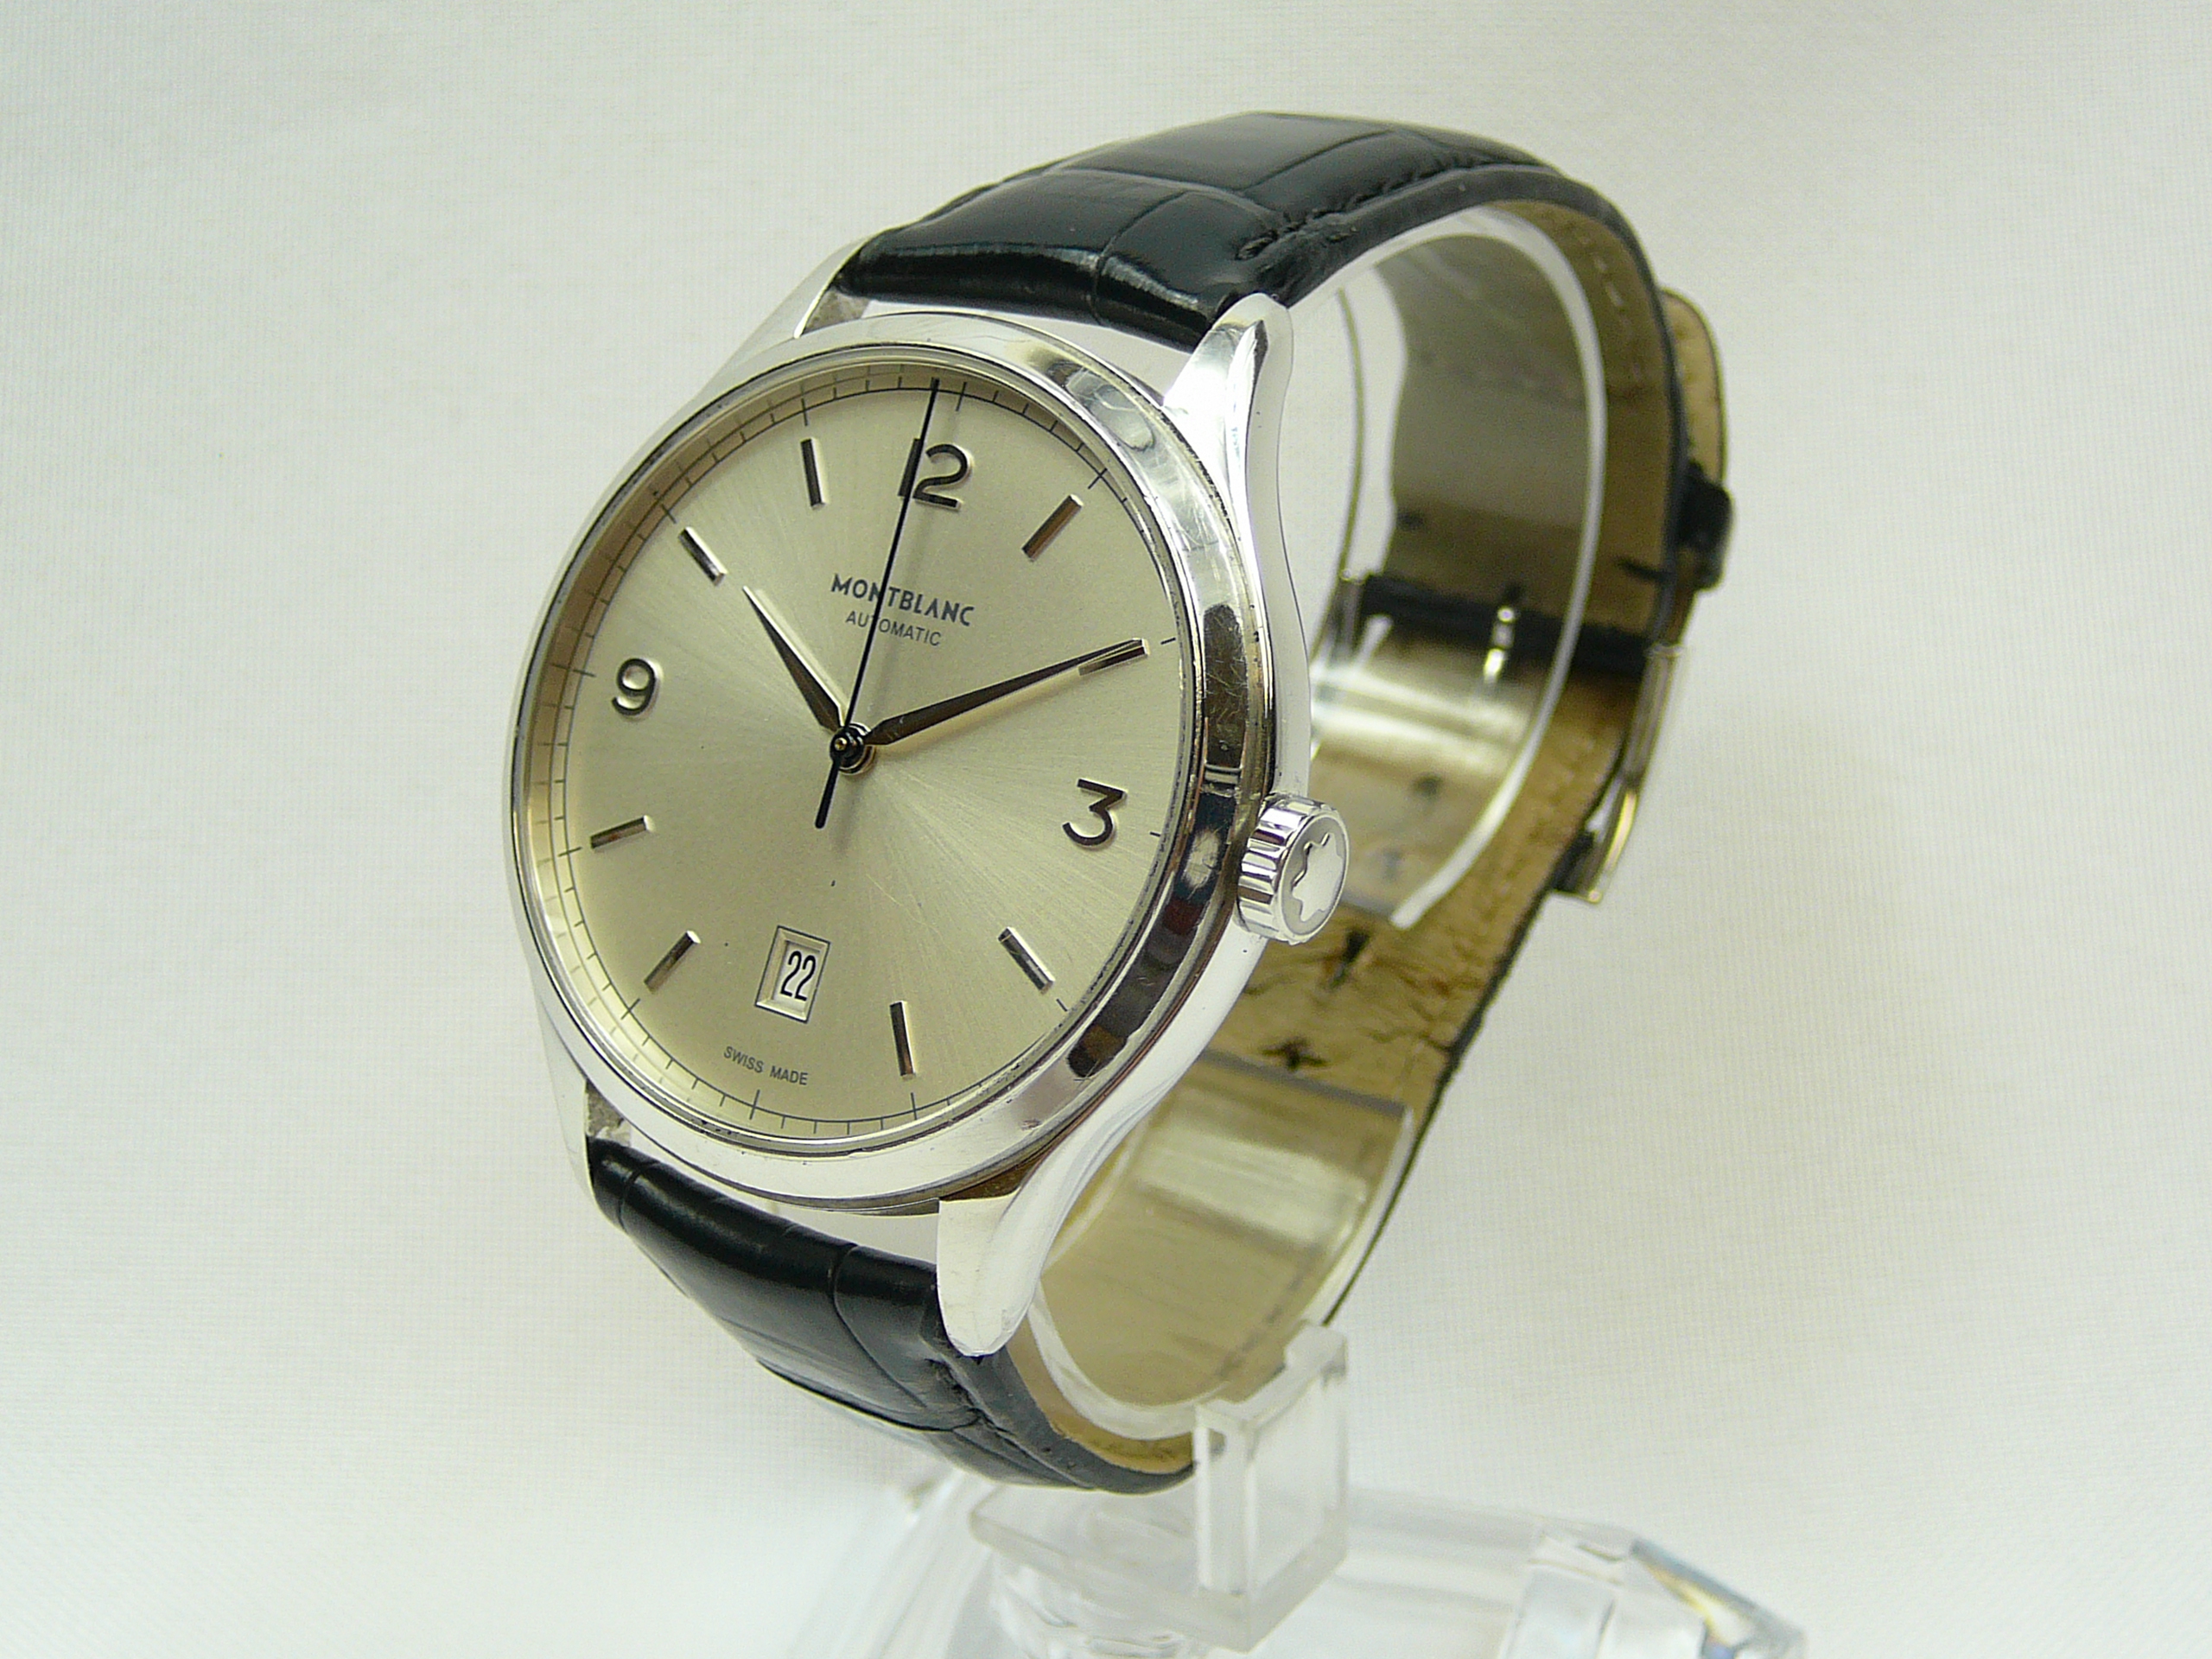 Gents Montblanc Wrist Watch